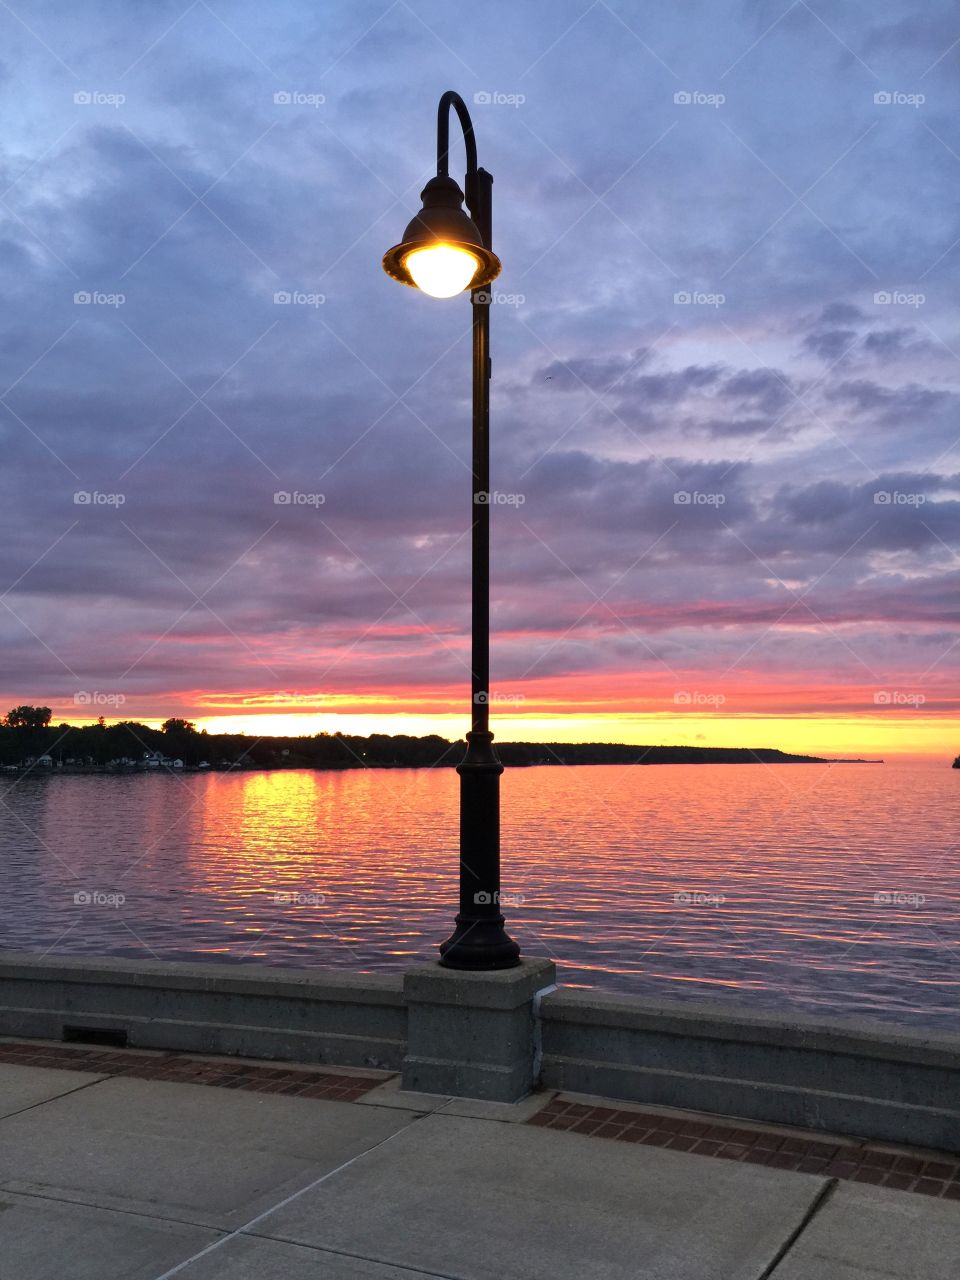 Sunset on the lake . Beautiful sunset on Lake Michigan 